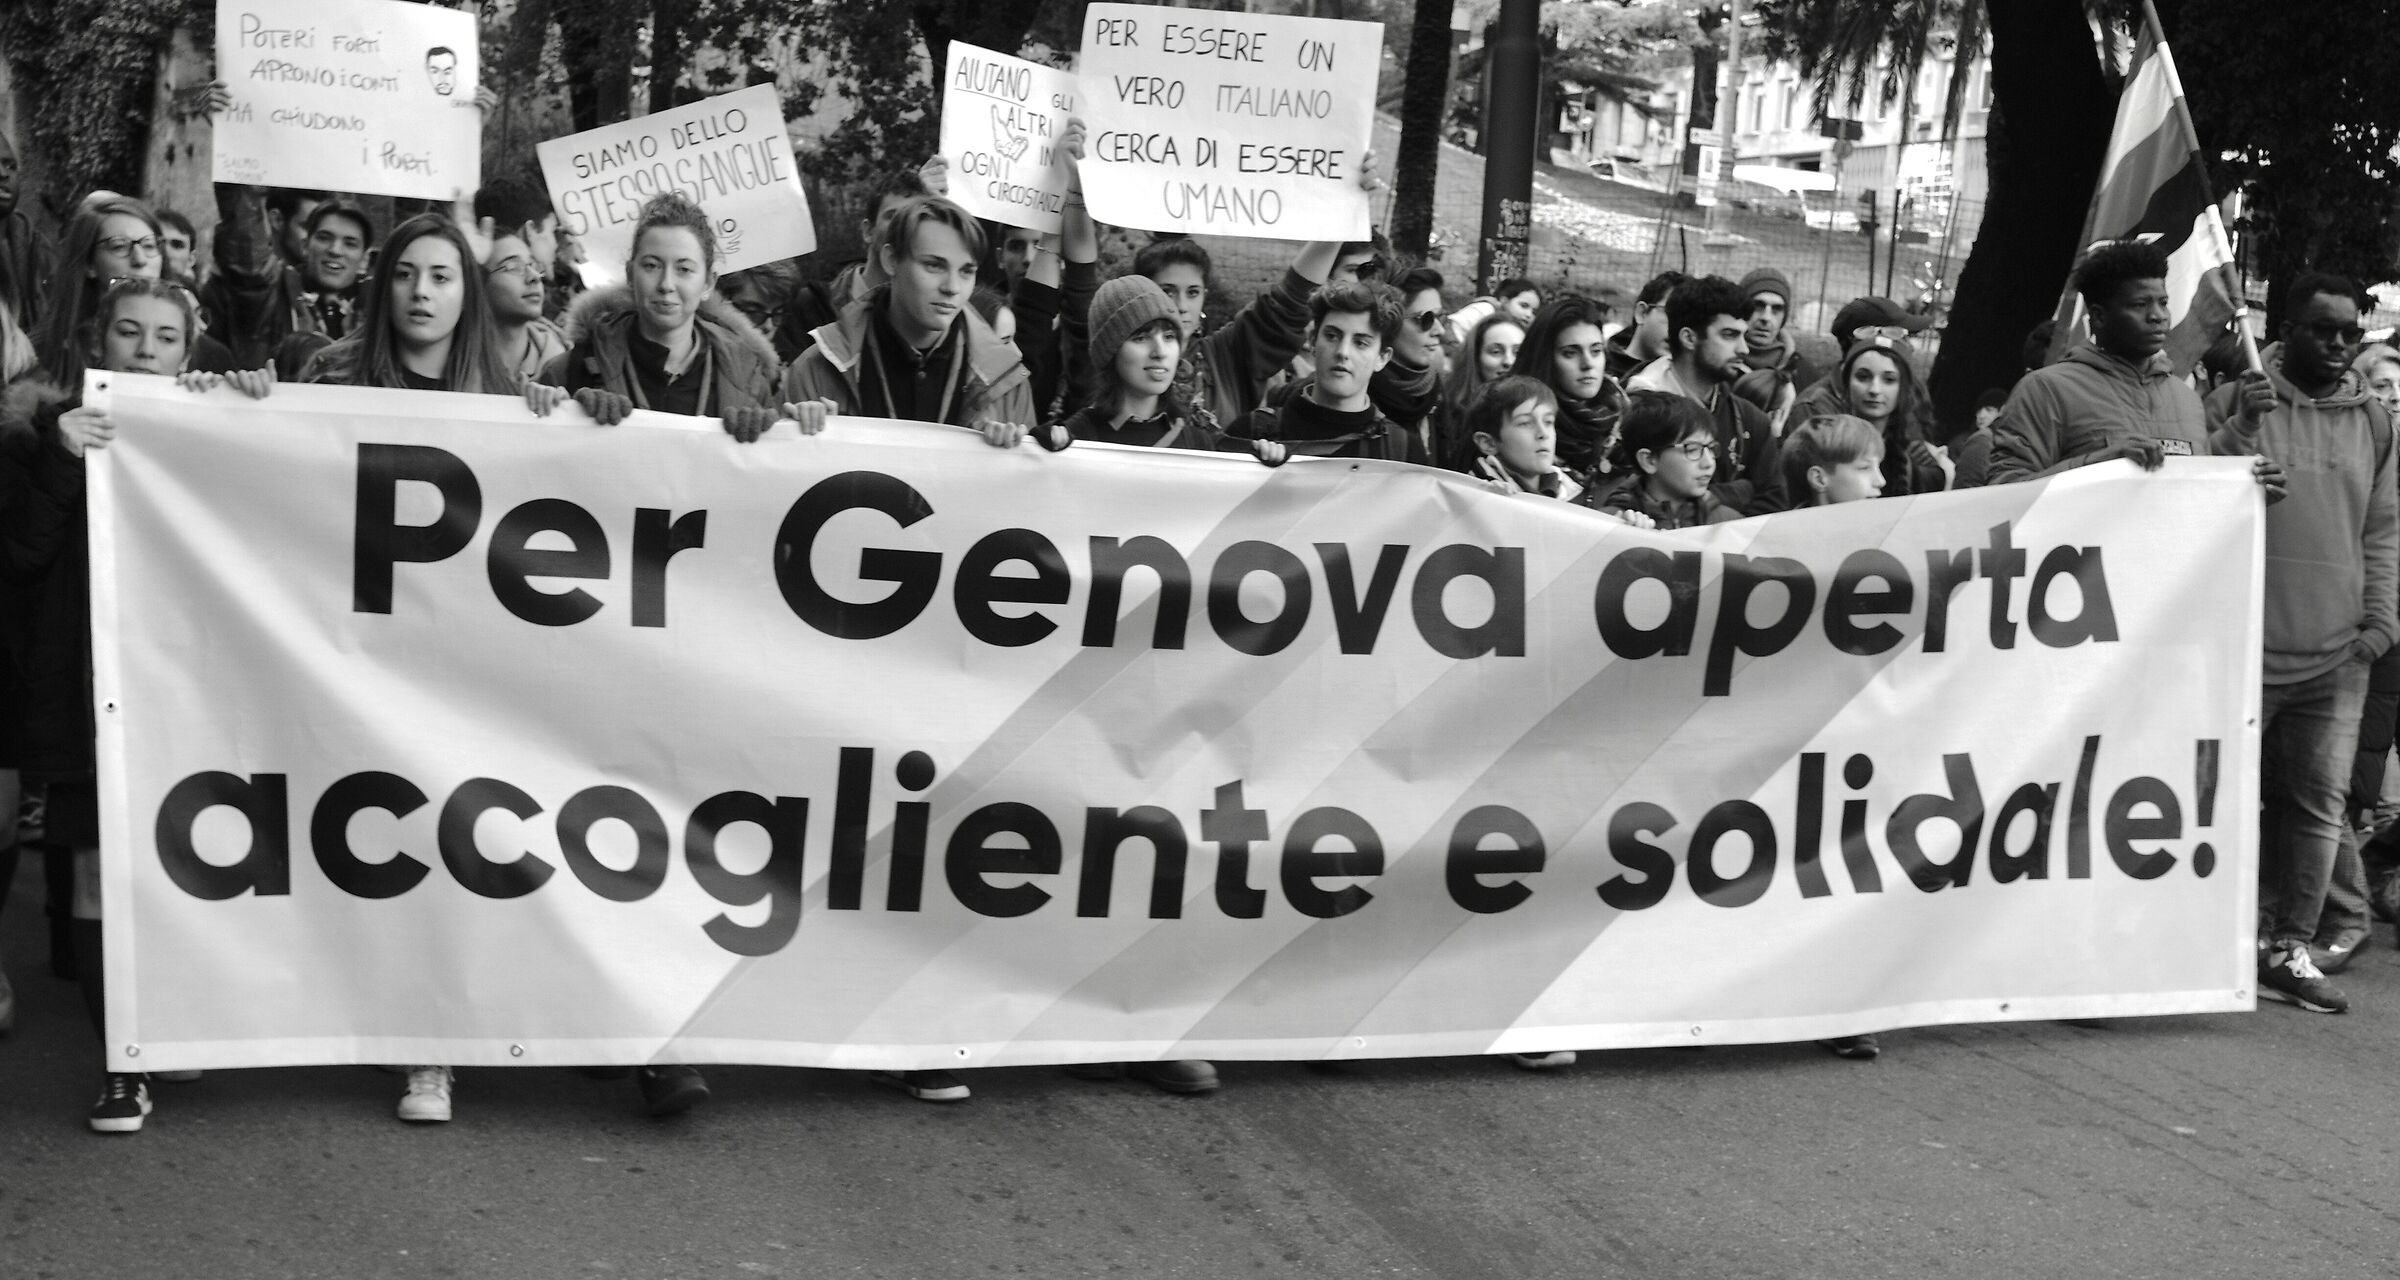 Genoa 26 January 2019...